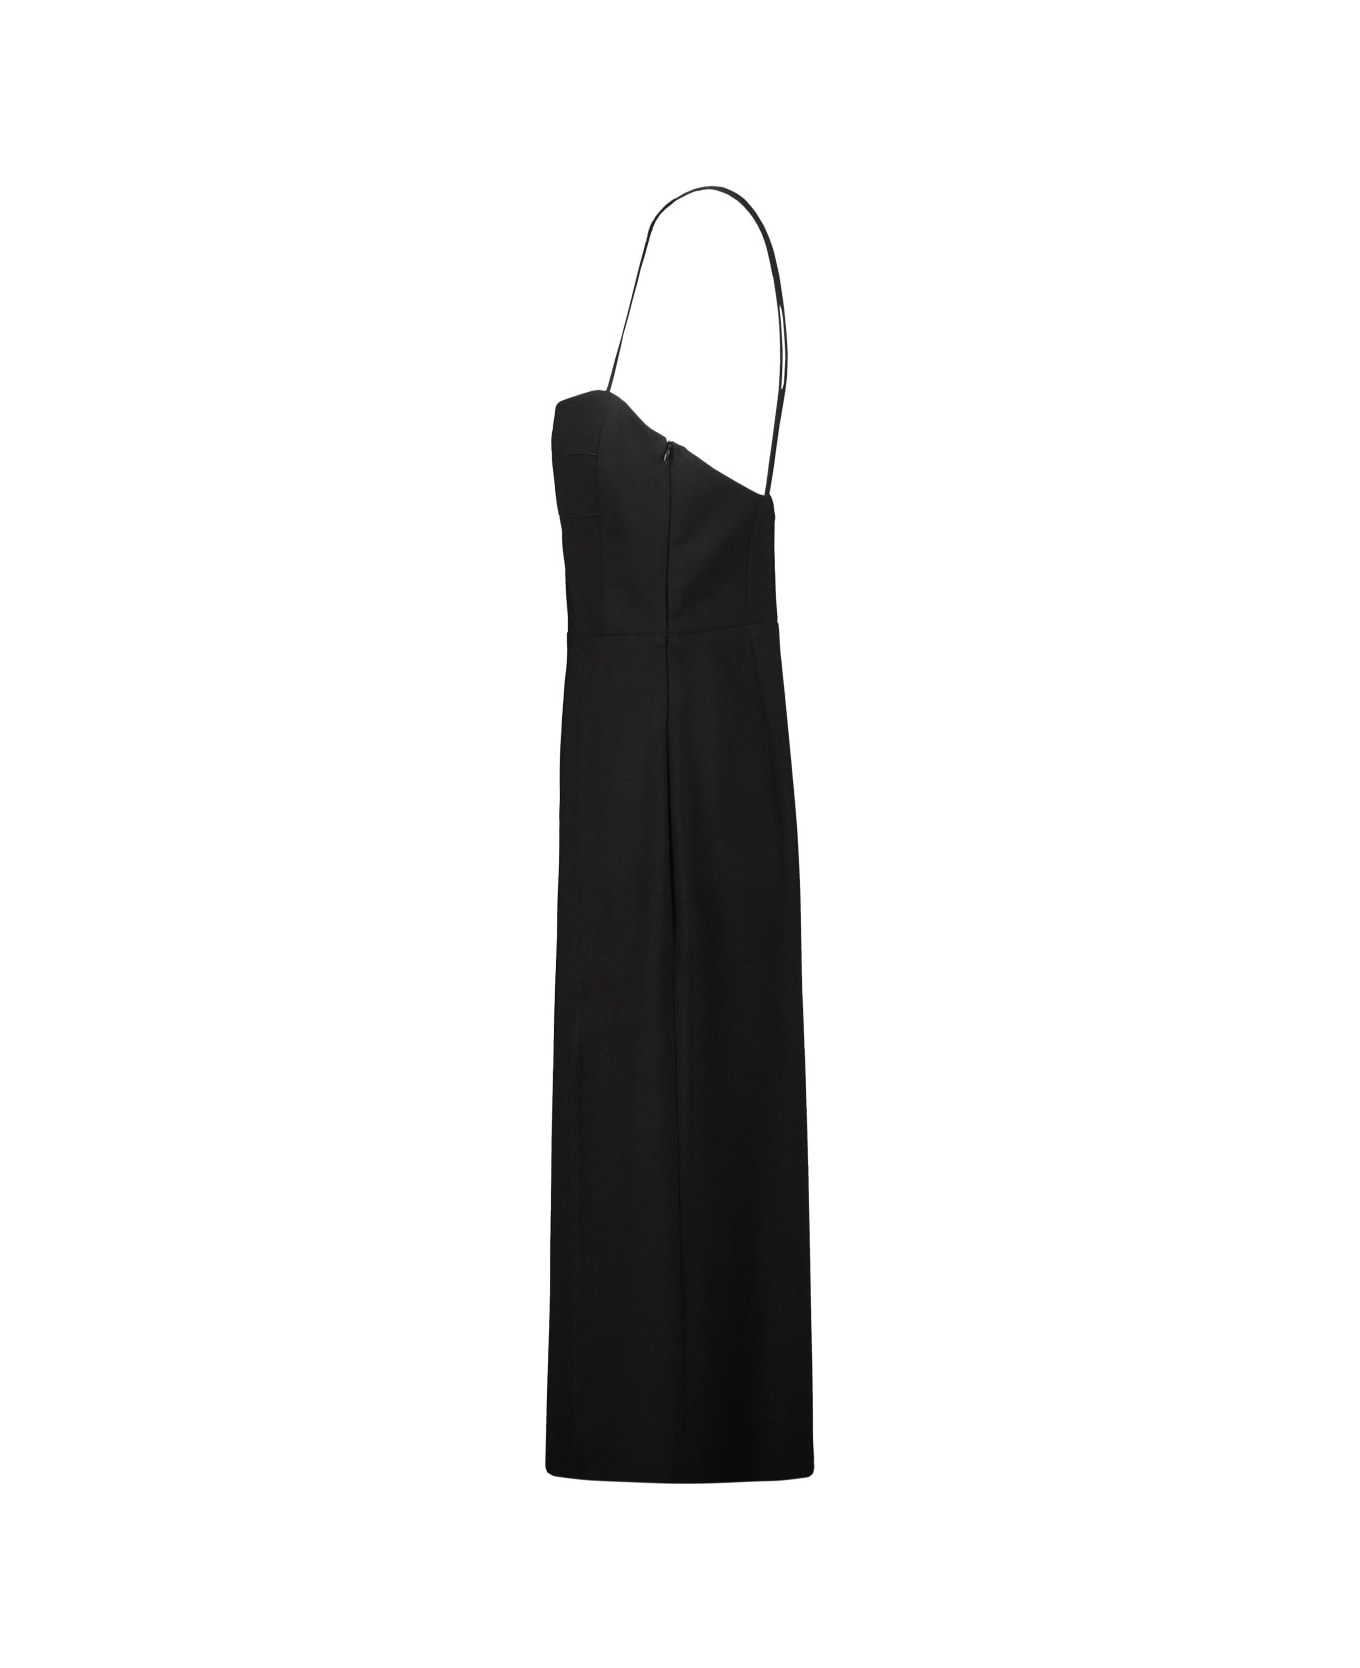 Drhope Dress - Black